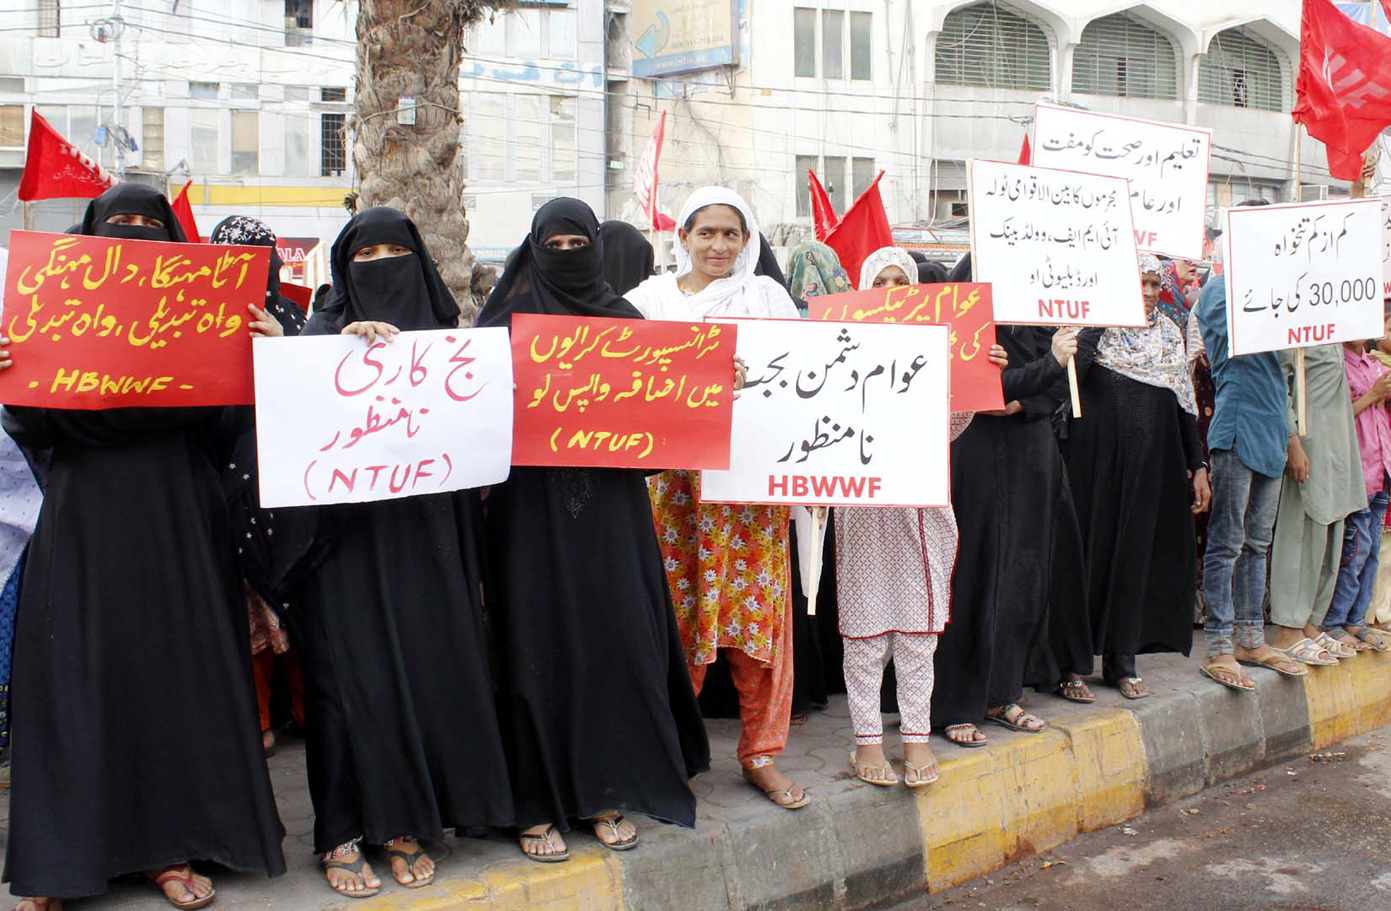 کراچی: نیشنل ٹریڈ یونین فیڈریشن کے ارکان ہوشربا مہنگائی کے خلاف احتجاج کررہے ہیں